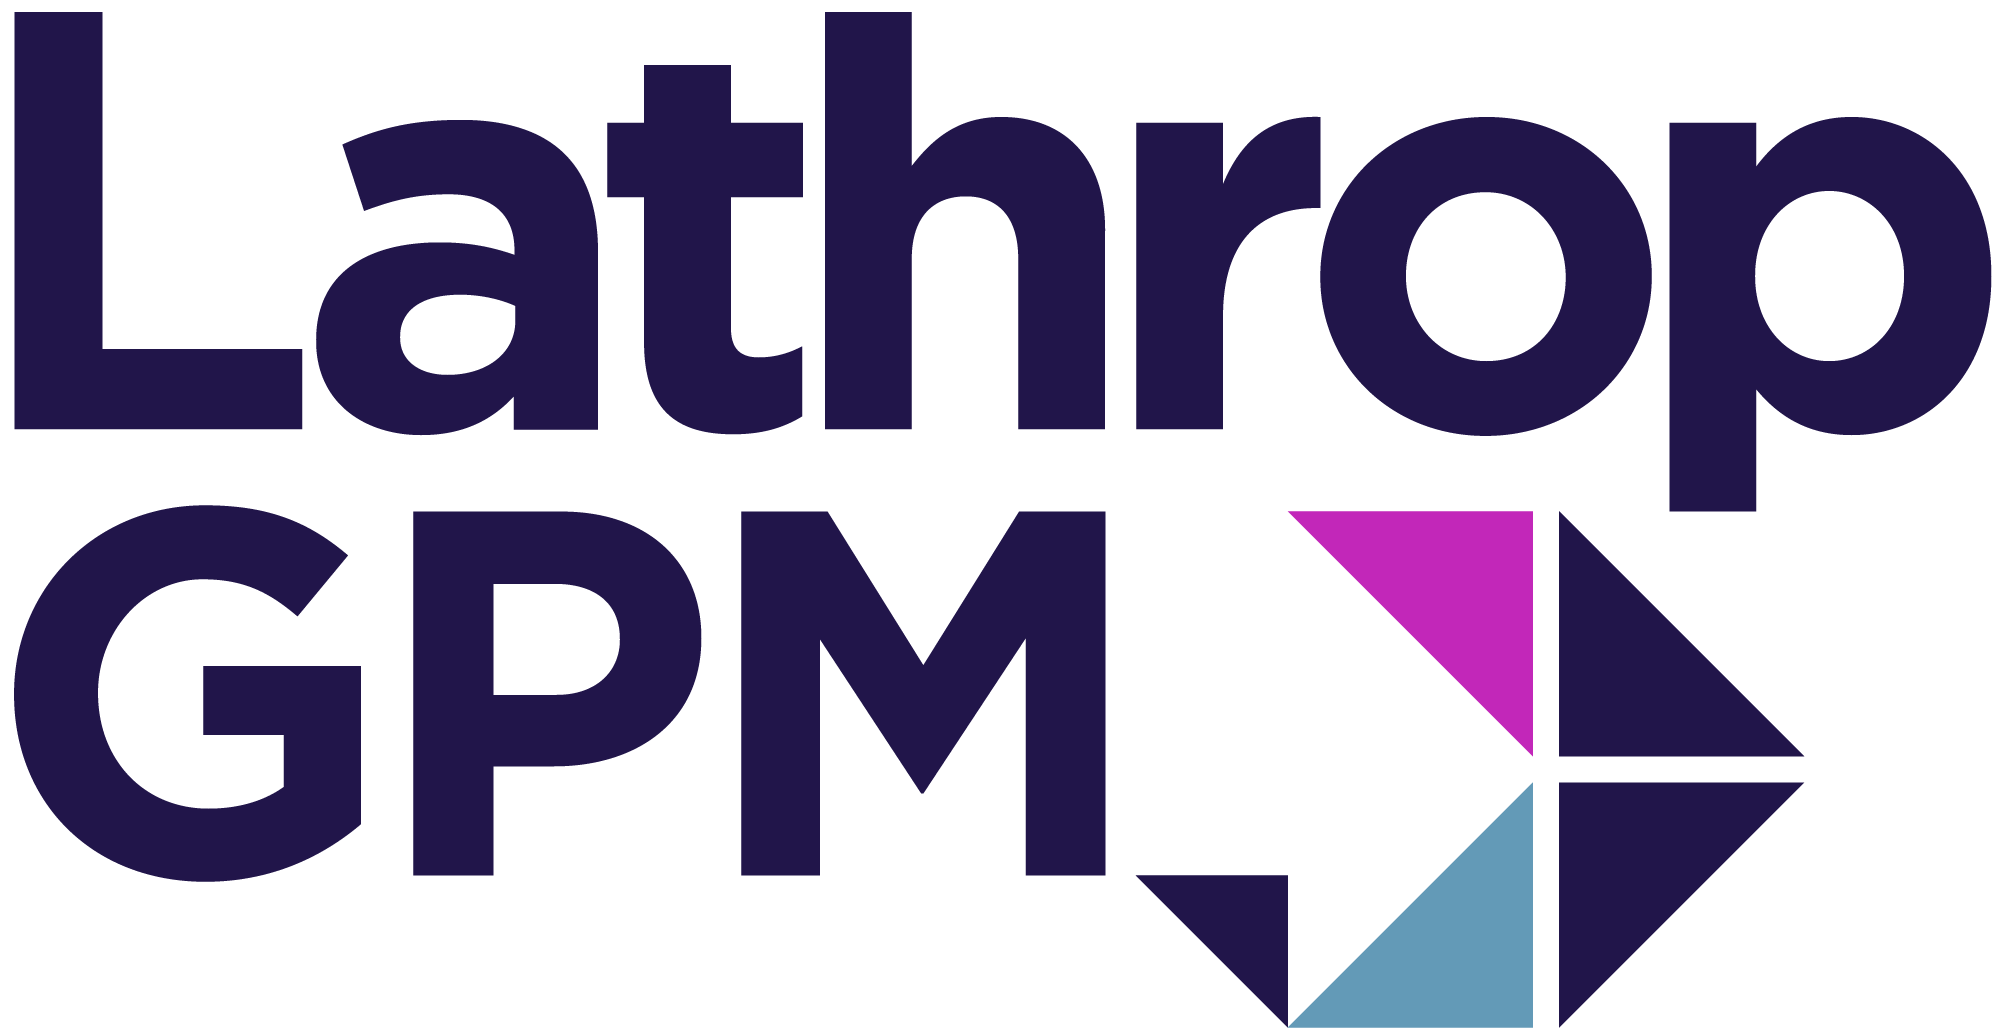 Lathrop GPM Logo